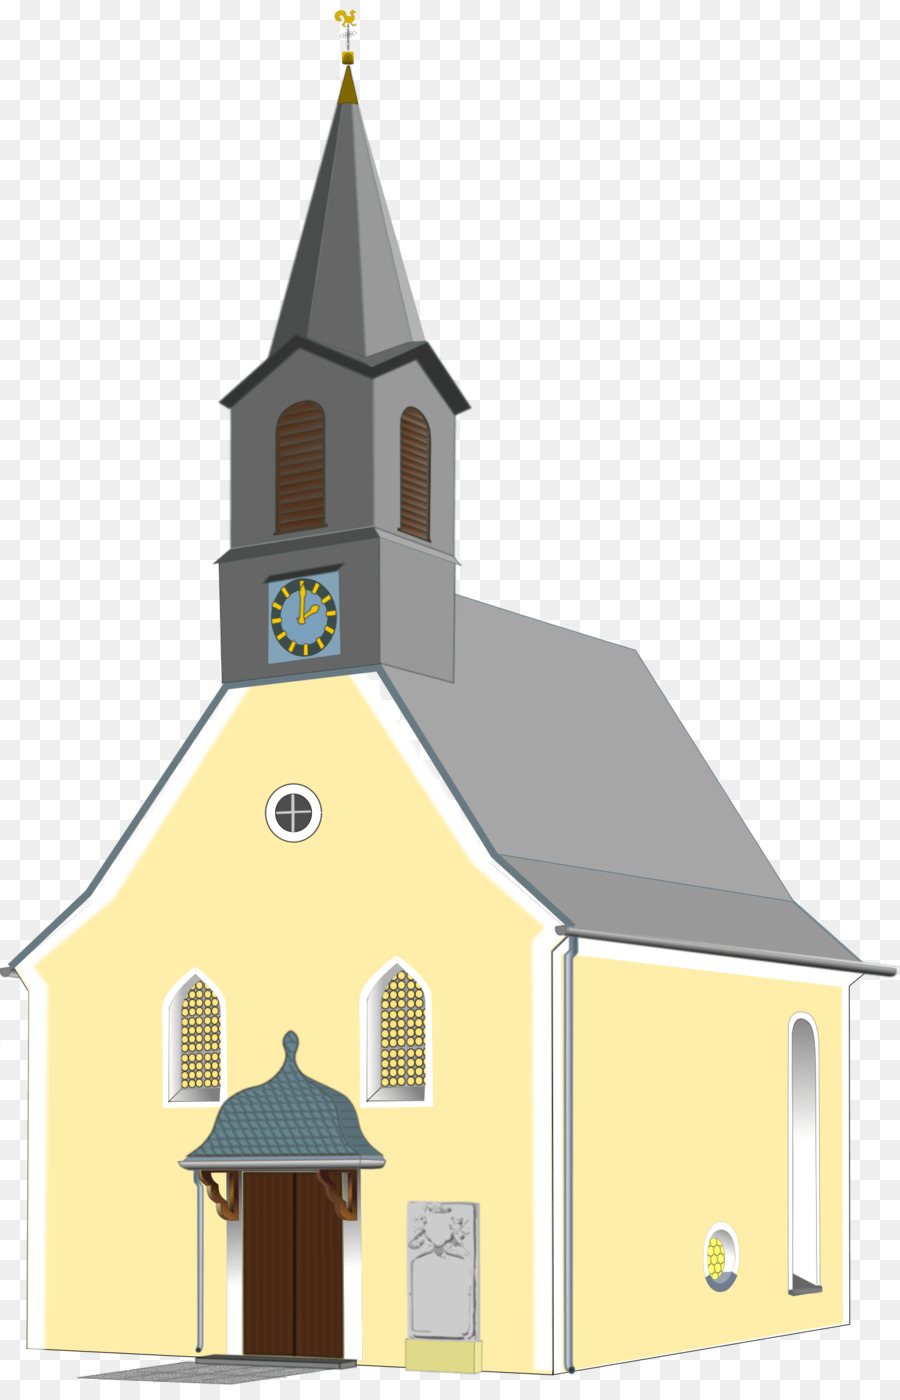 Clip art Portable Network Graphics Chiesa Cristiana Immagine - chiesa clipart